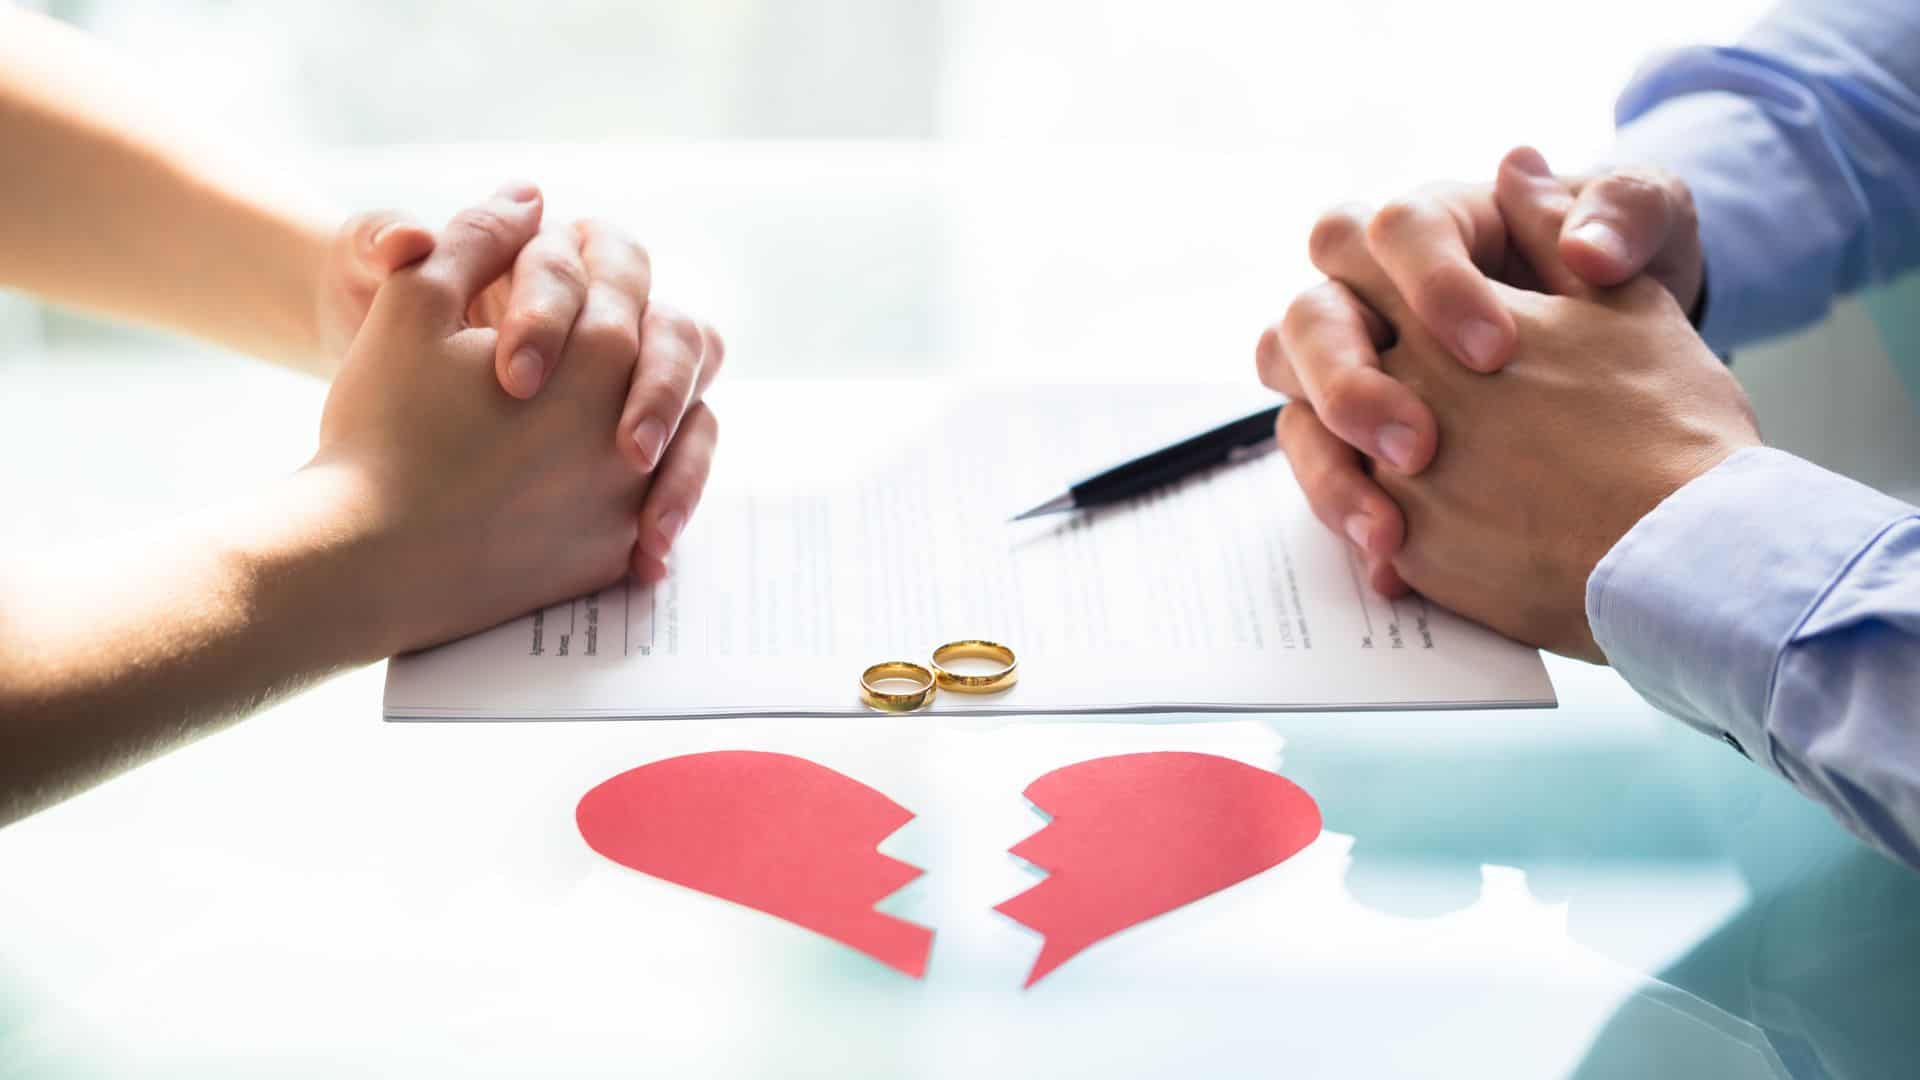 https://cdn.pinchofattitude.com/wp-content/uploads/2019/03/how-to-fix-a-broken-marriage.jpg